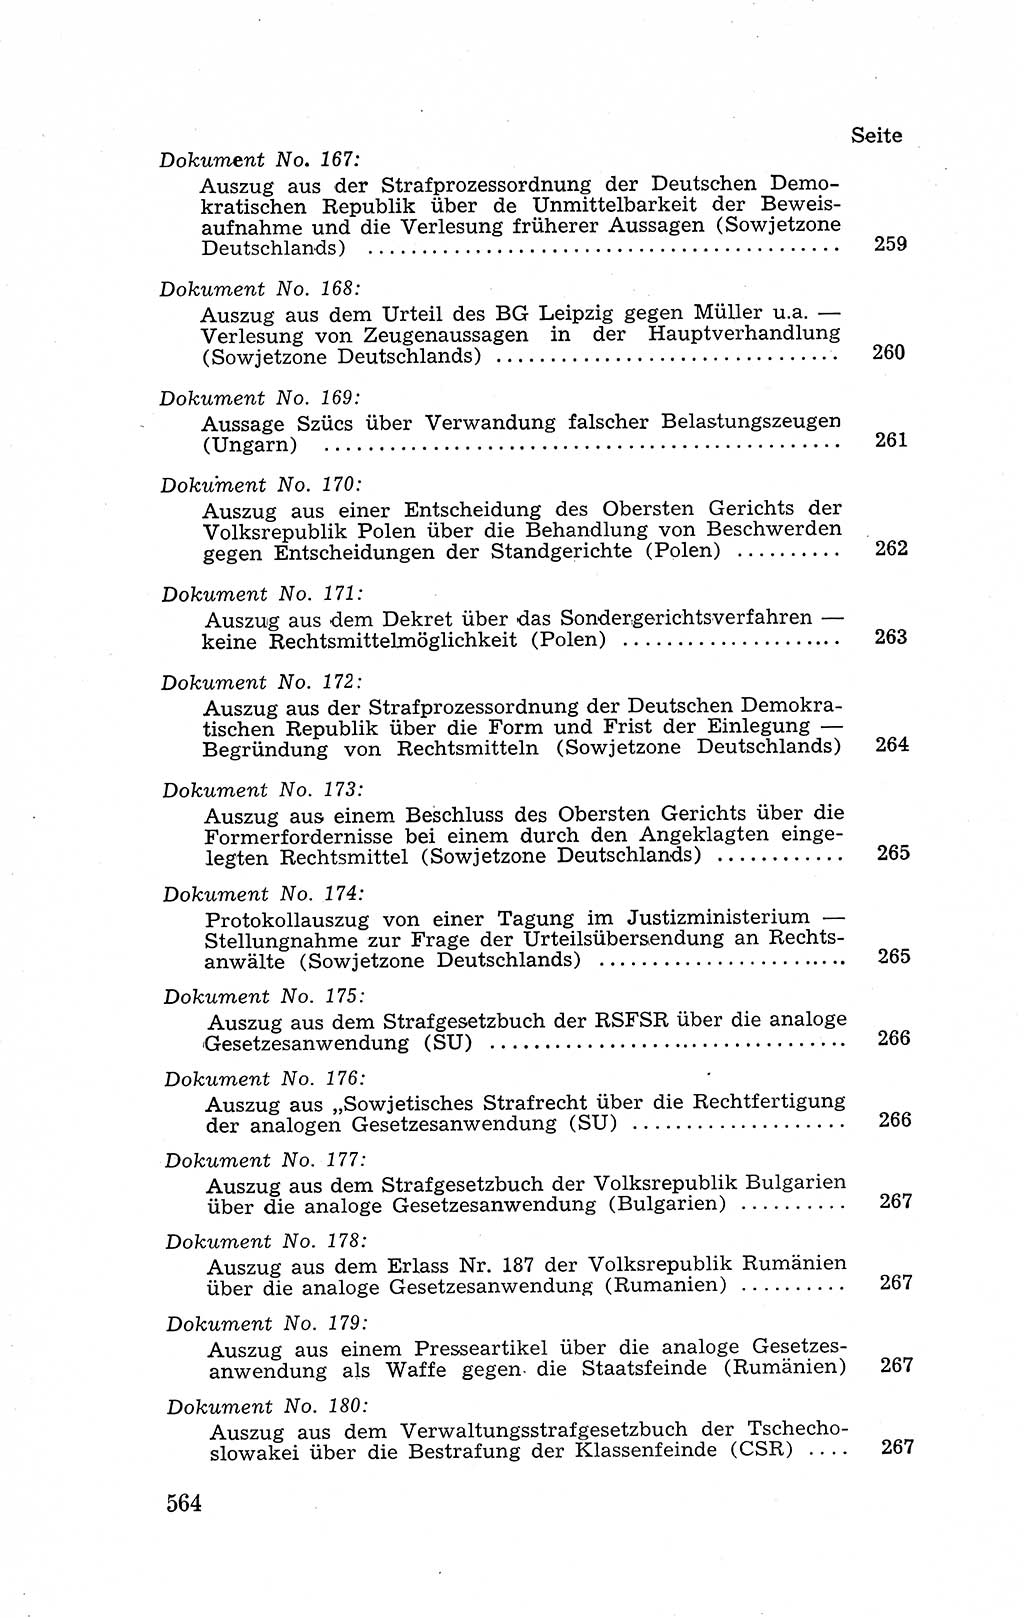 Recht in Fesseln, Dokumente, Internationale Juristen-Kommission [Bundesrepublik Deutschland (BRD)] 1955, Seite 564 (R. Dok. IJK BRD 1955, S. 564)